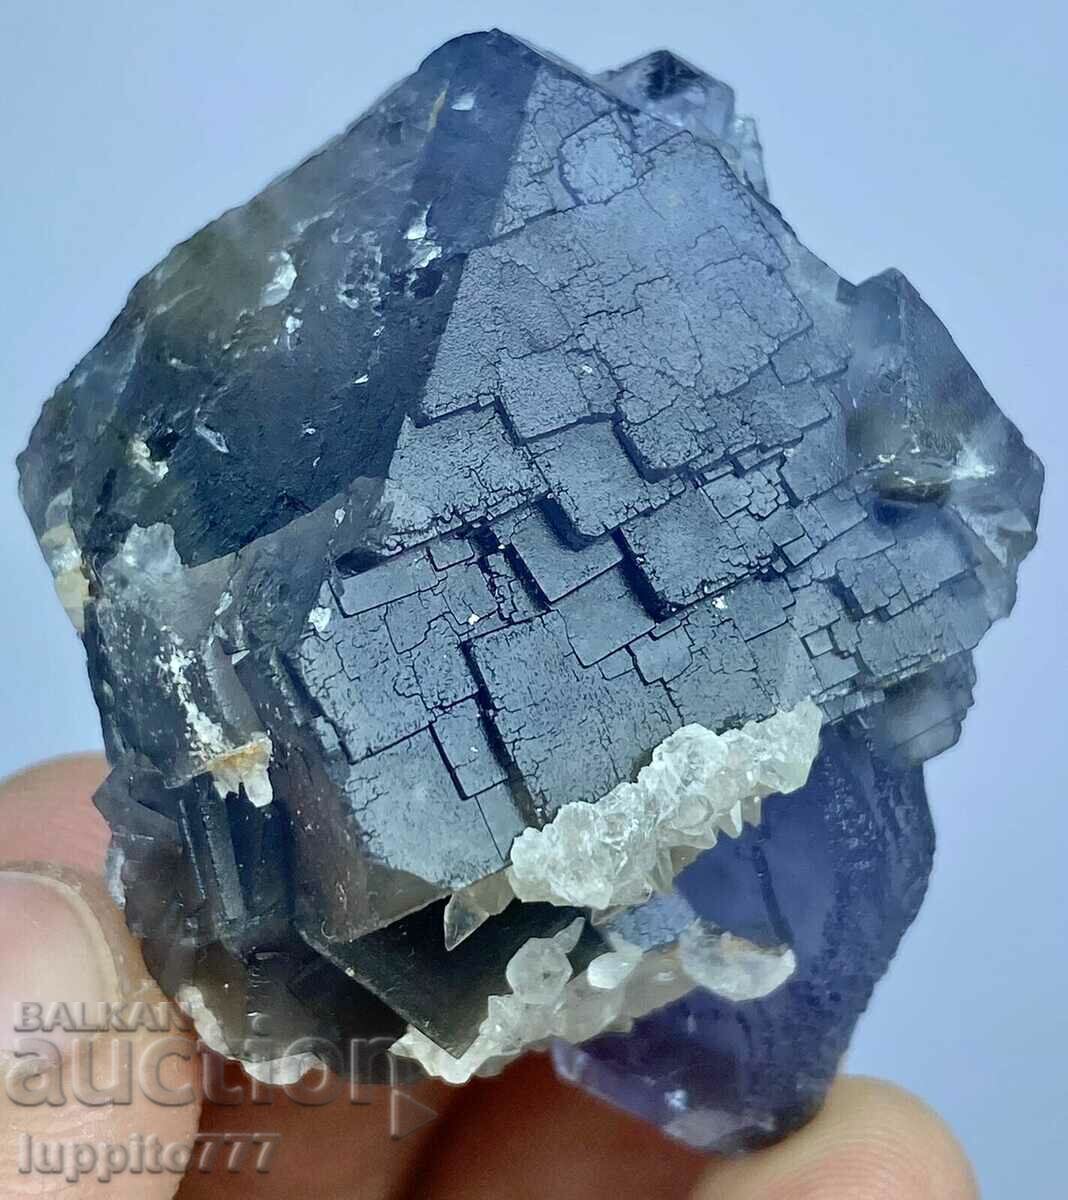 69 γραμμάρια φυσικού φάντασμα μπλε φθορίτη σε μήτρα μοναδικό